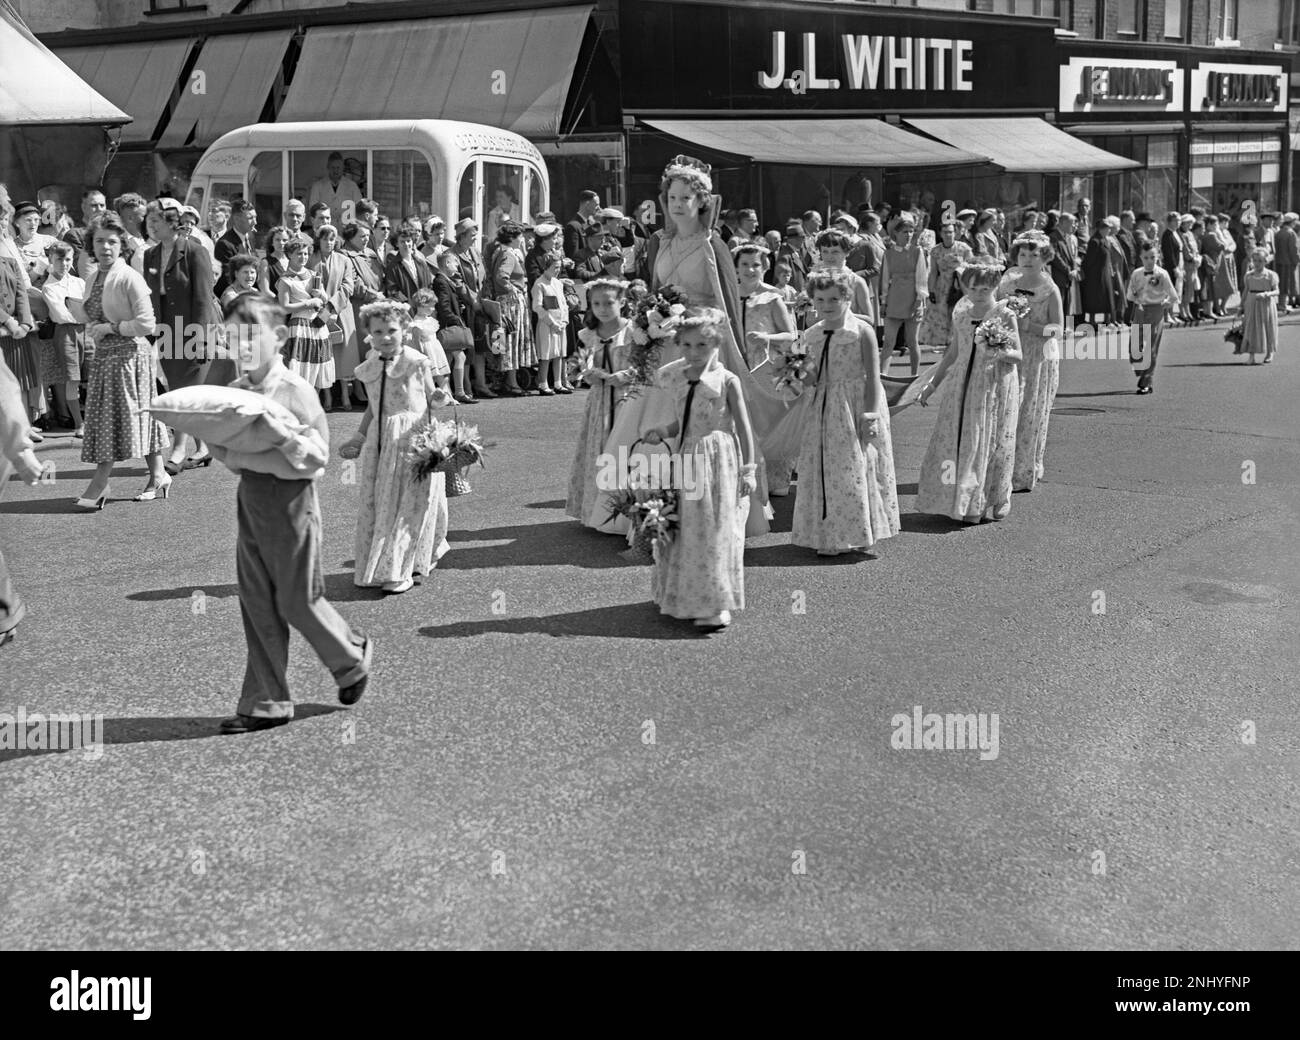 A Whit marche procession à Union Street, Oldham, Greater Manchester, Lancashire, Angleterre, R.-U. v.1960. Une "Rose Reine" portant sa couronne est entourée d'enfants portant des fleurs. La fourgonnette de glace d’O’Donnell est en arrière-plan. L'événement religieux de l'Église d'Angleterre a traditionnellement eu lieu le vendredi de la Pentecôte, avec des enfants fortement impliqués ainsi que des bandes de cuivres et d'argent. Il est tiré d'un vieux négatif noir et blanc – une photographie vintage 1950s/60s. Banque D'Images